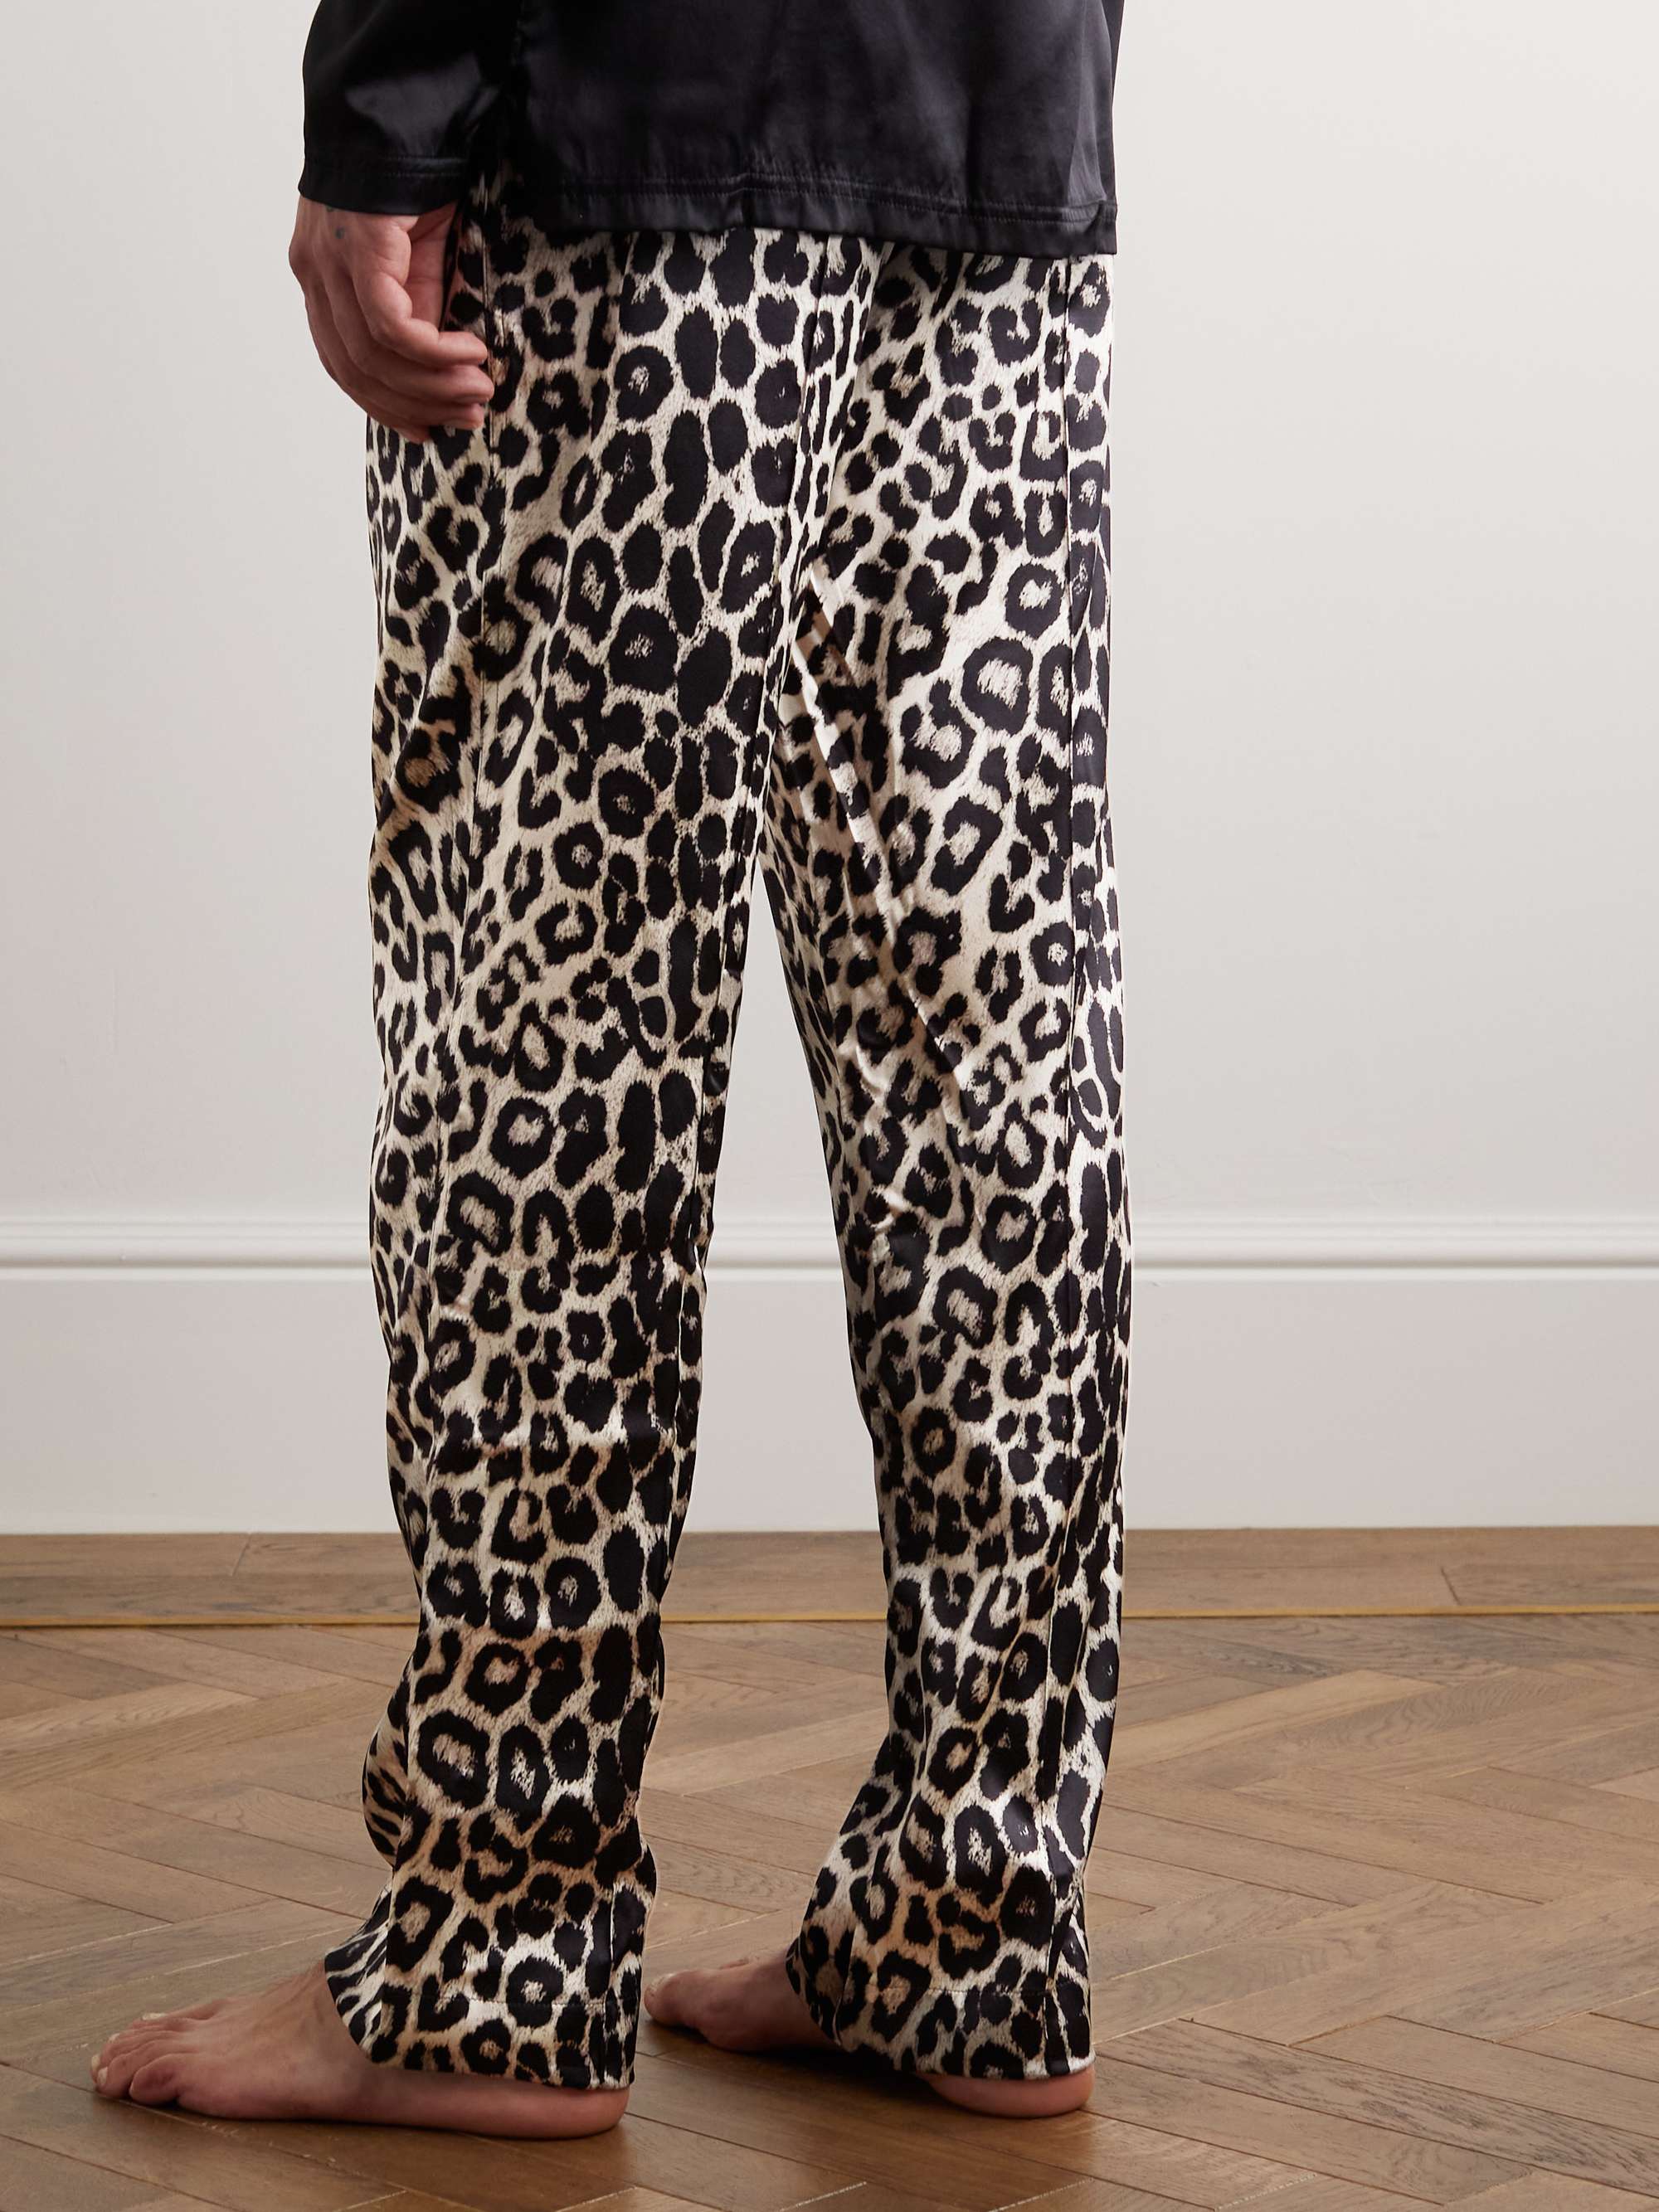 TOM FORD Leopard-Print Velvet-Trimmed Silk-Blend Pyjama Trousers